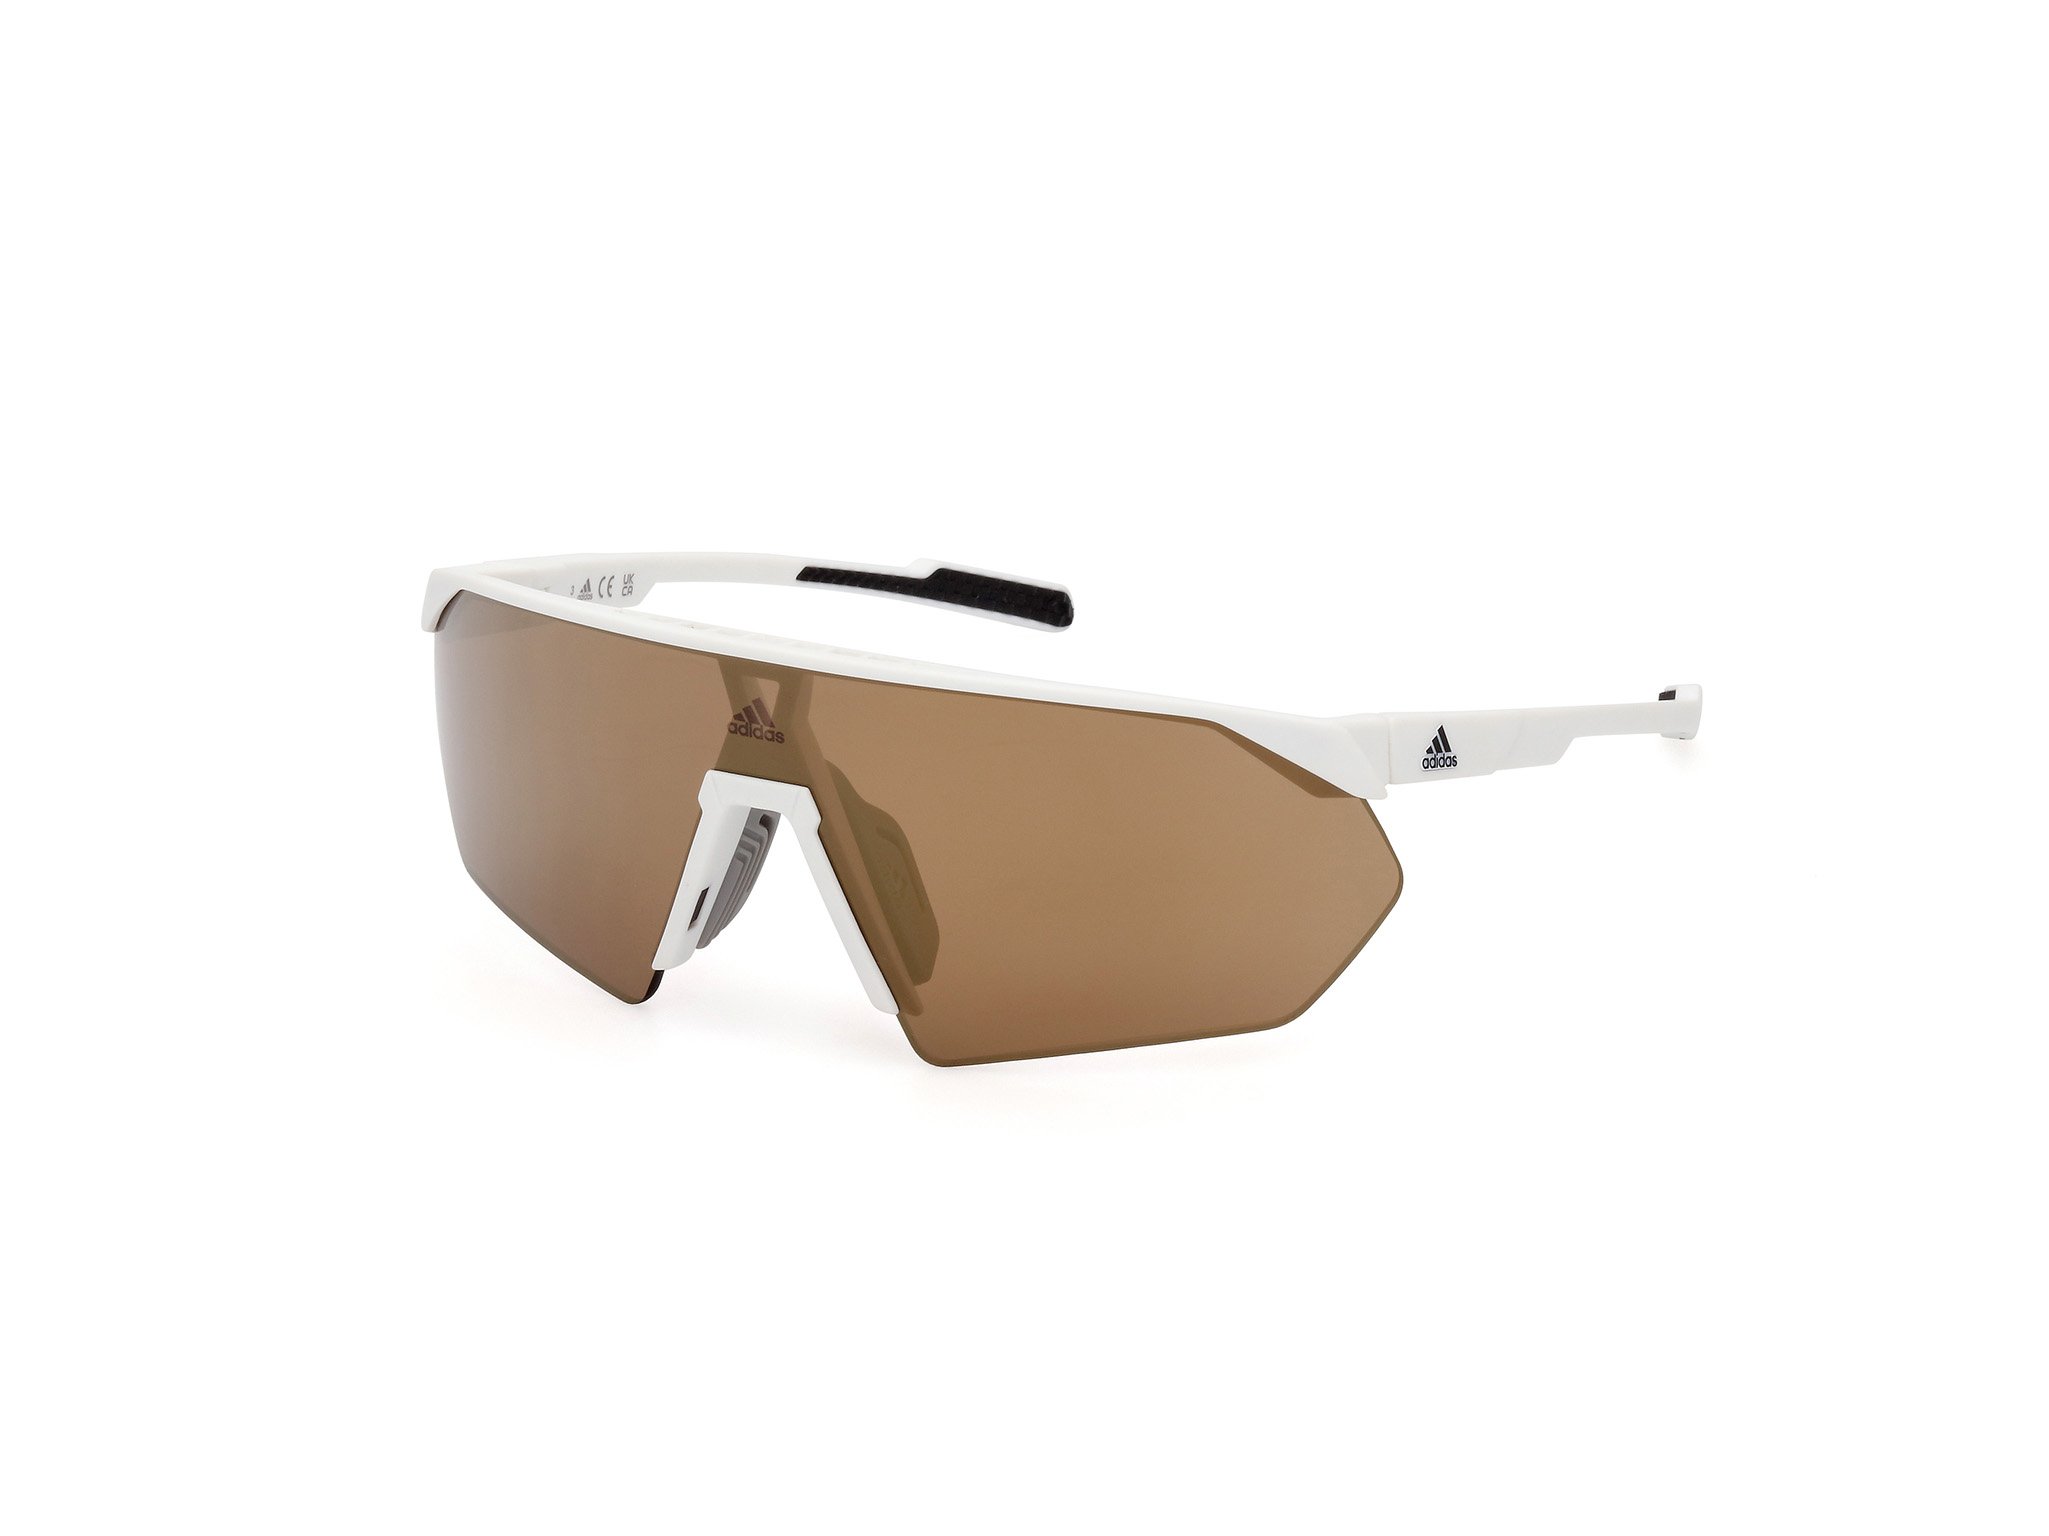 Das Bild zeigt die Sonnenbrille SP0076 21G von der Marke Adidas Sport in weiß.